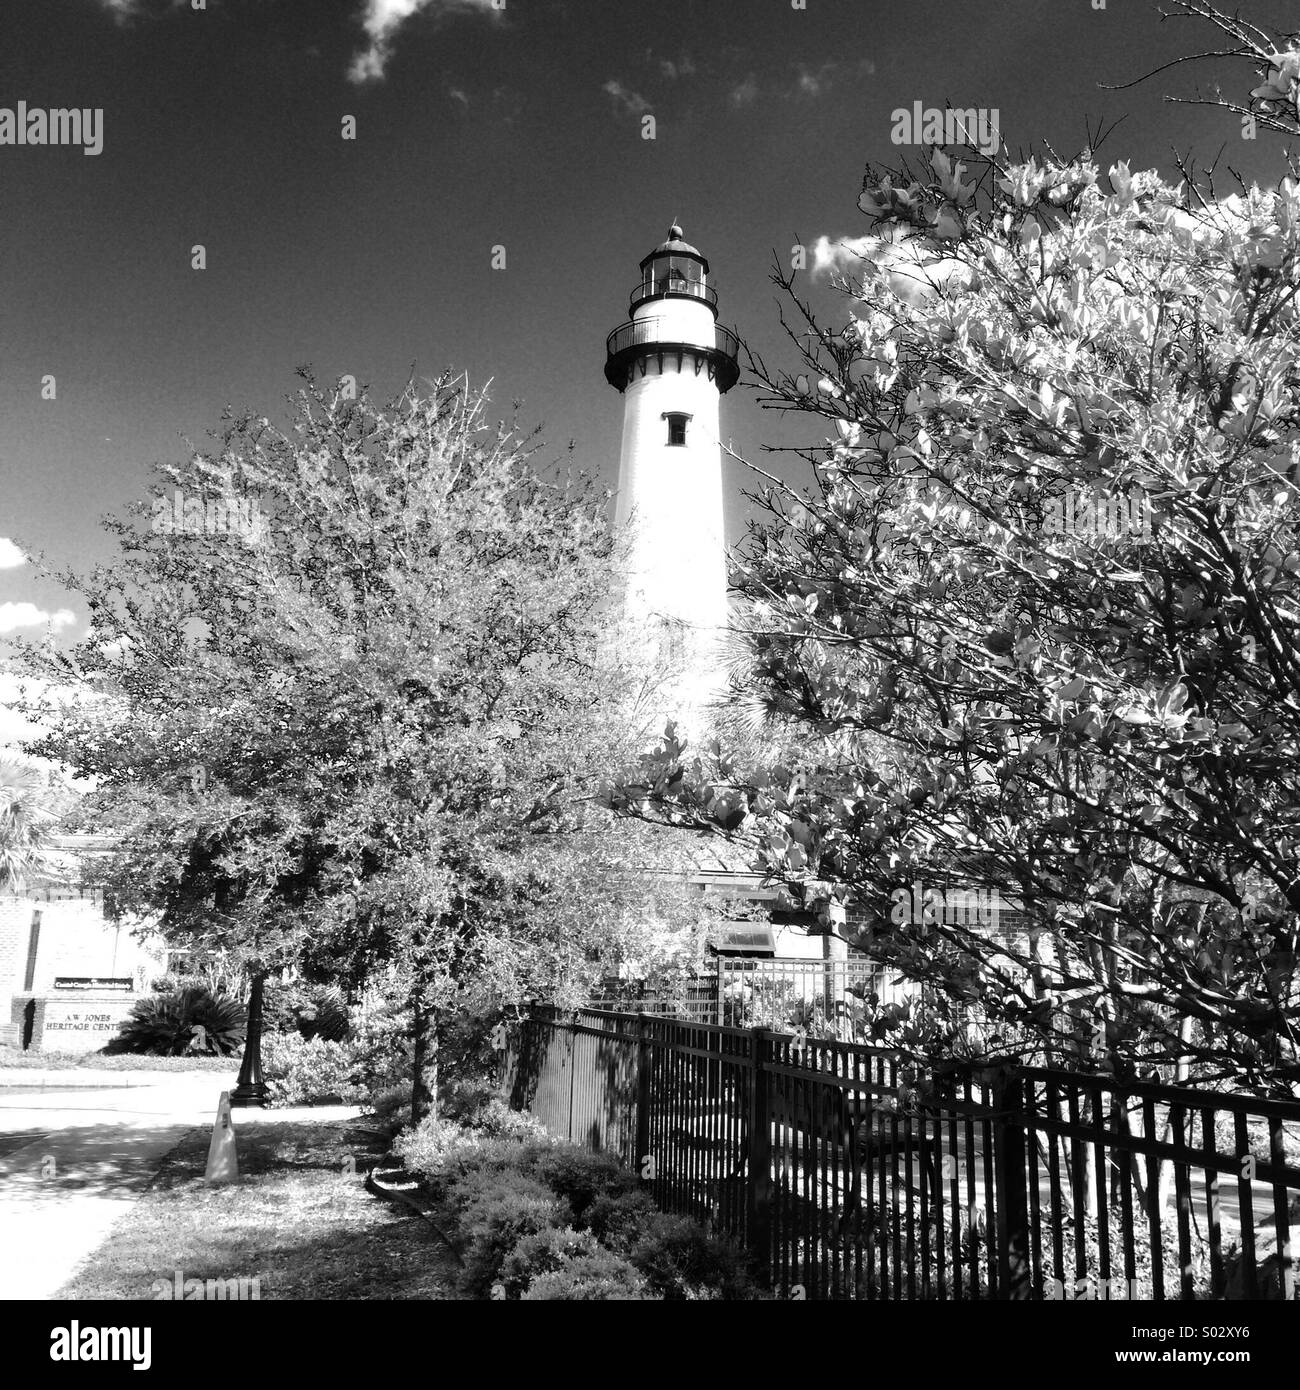 St. Simon's Island Lighthouse, St. Simon's Island, Georgia Stock Photo